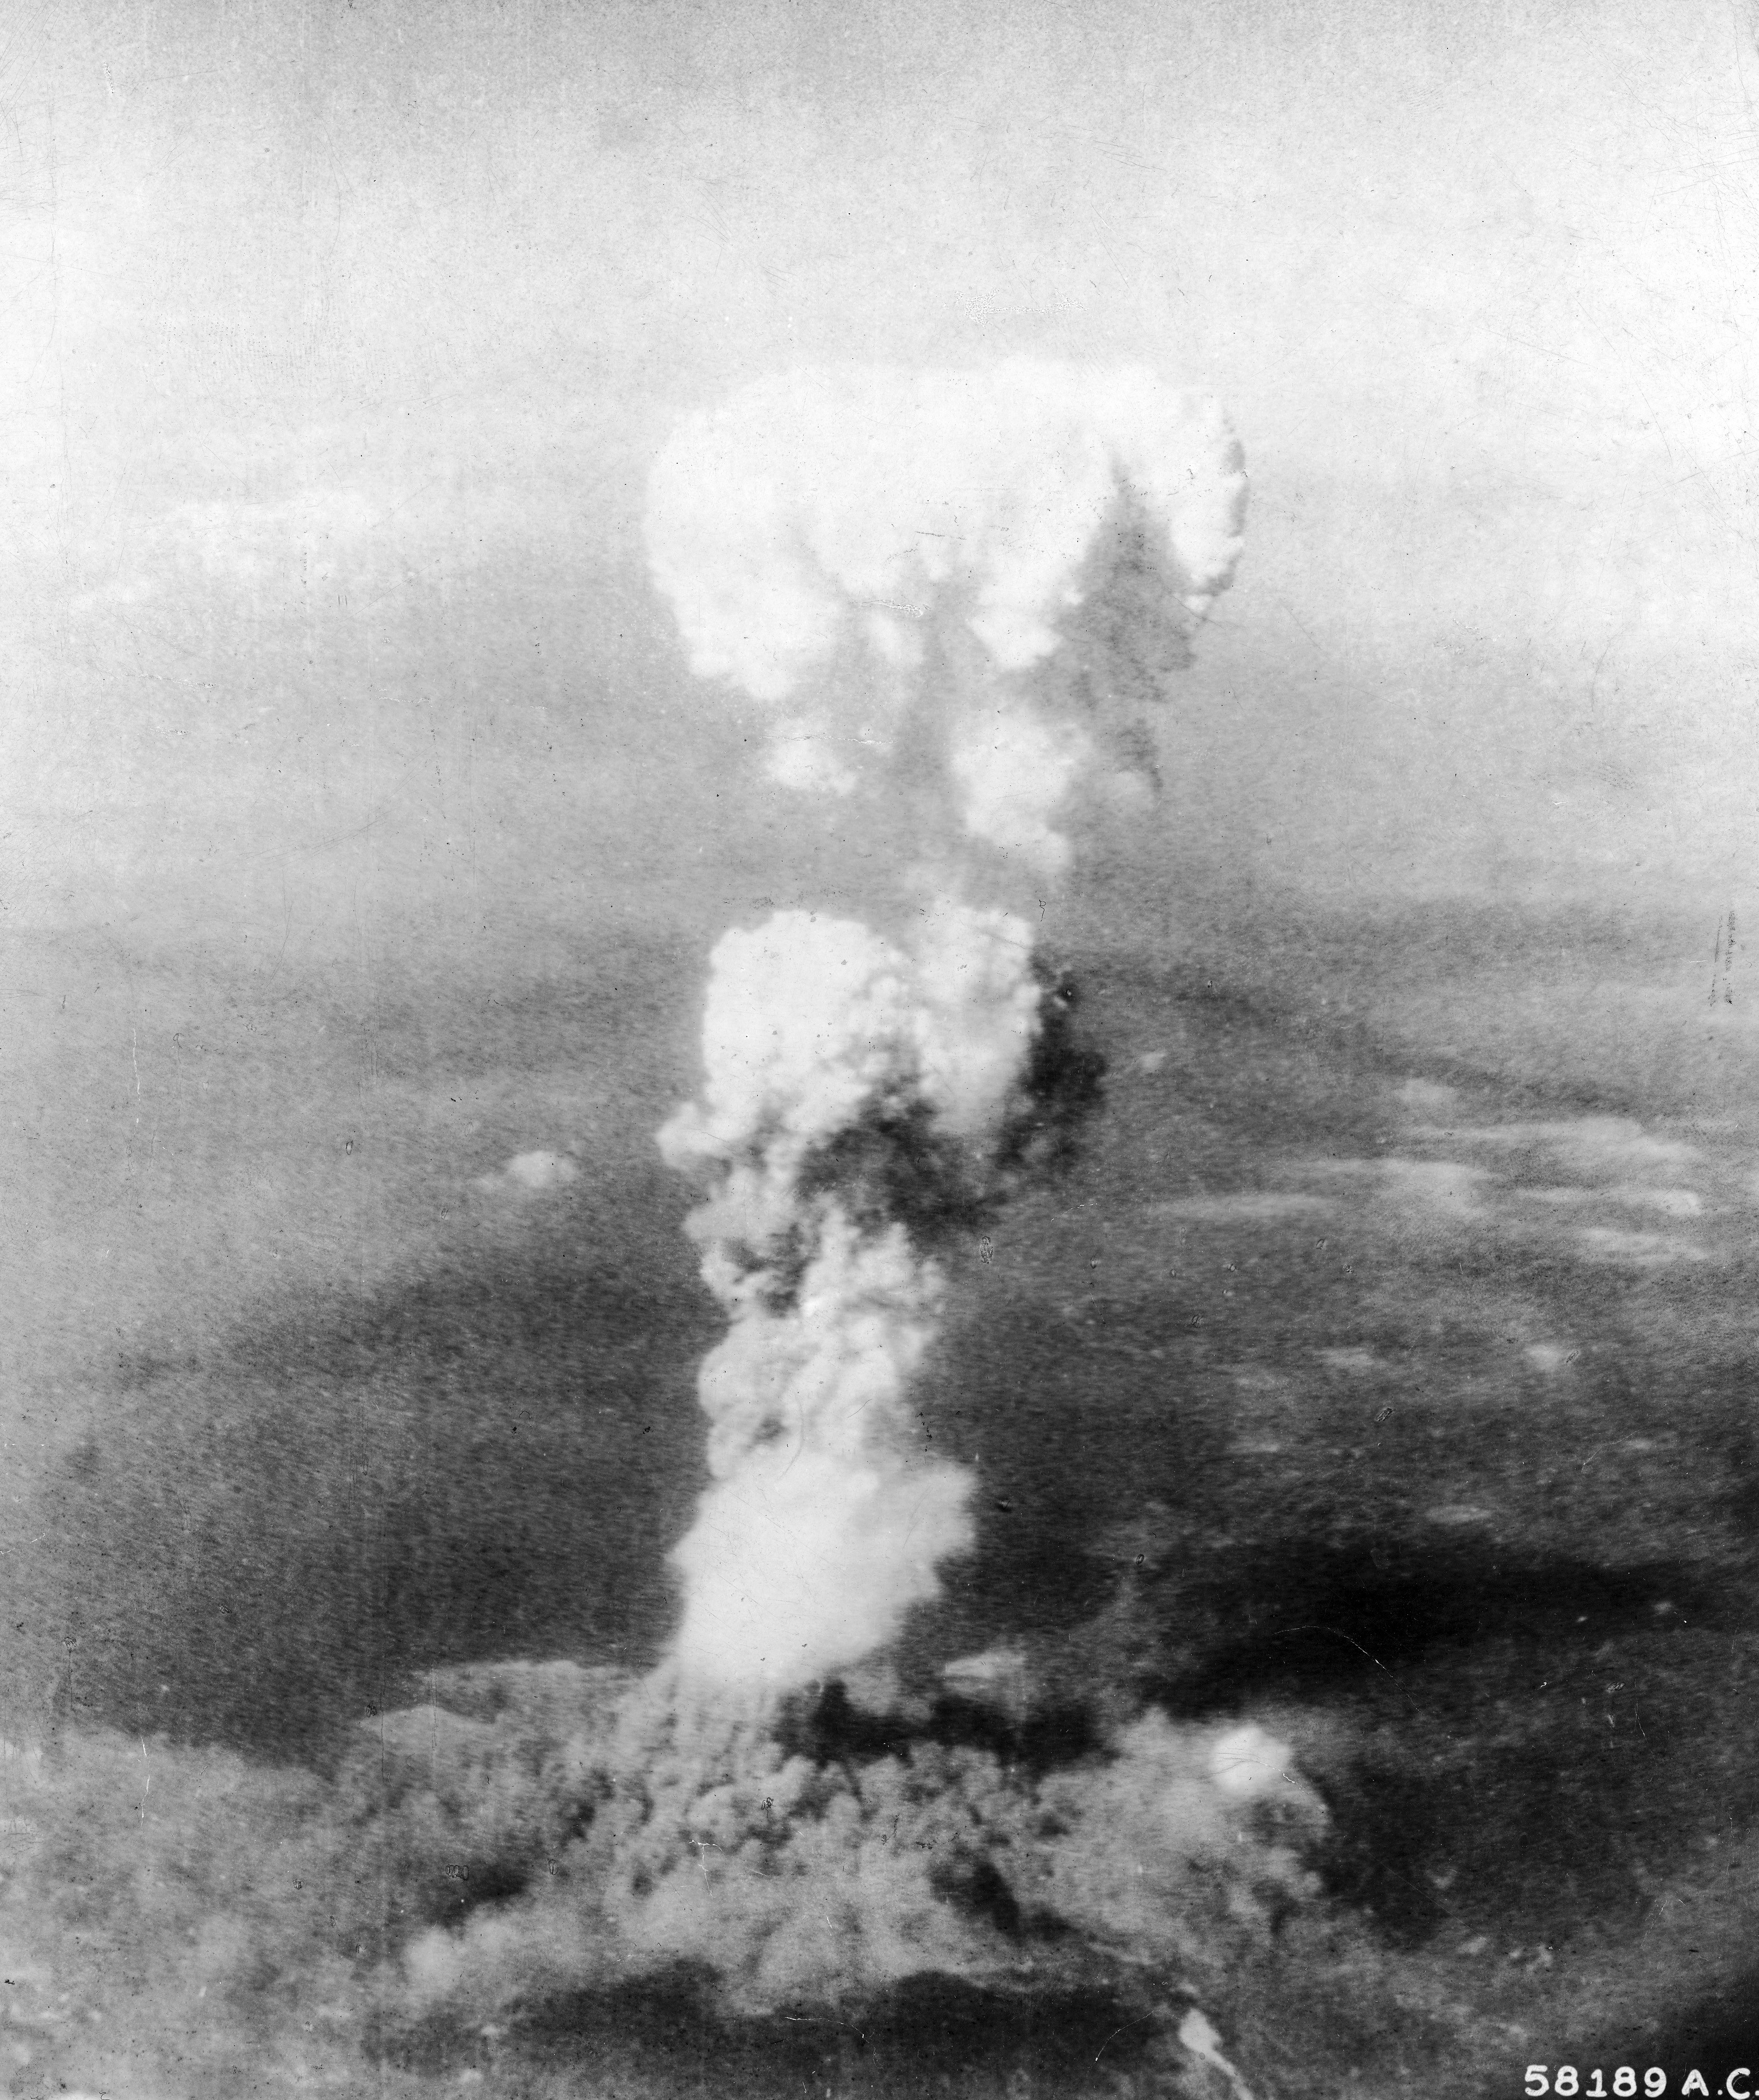 A fumaça em forma de cogumelo que se formou após o lançamento da bomba em Hiroshima atingiu 6 km de altura. (Foto: The LIFE Picture Collection/Getty Images)